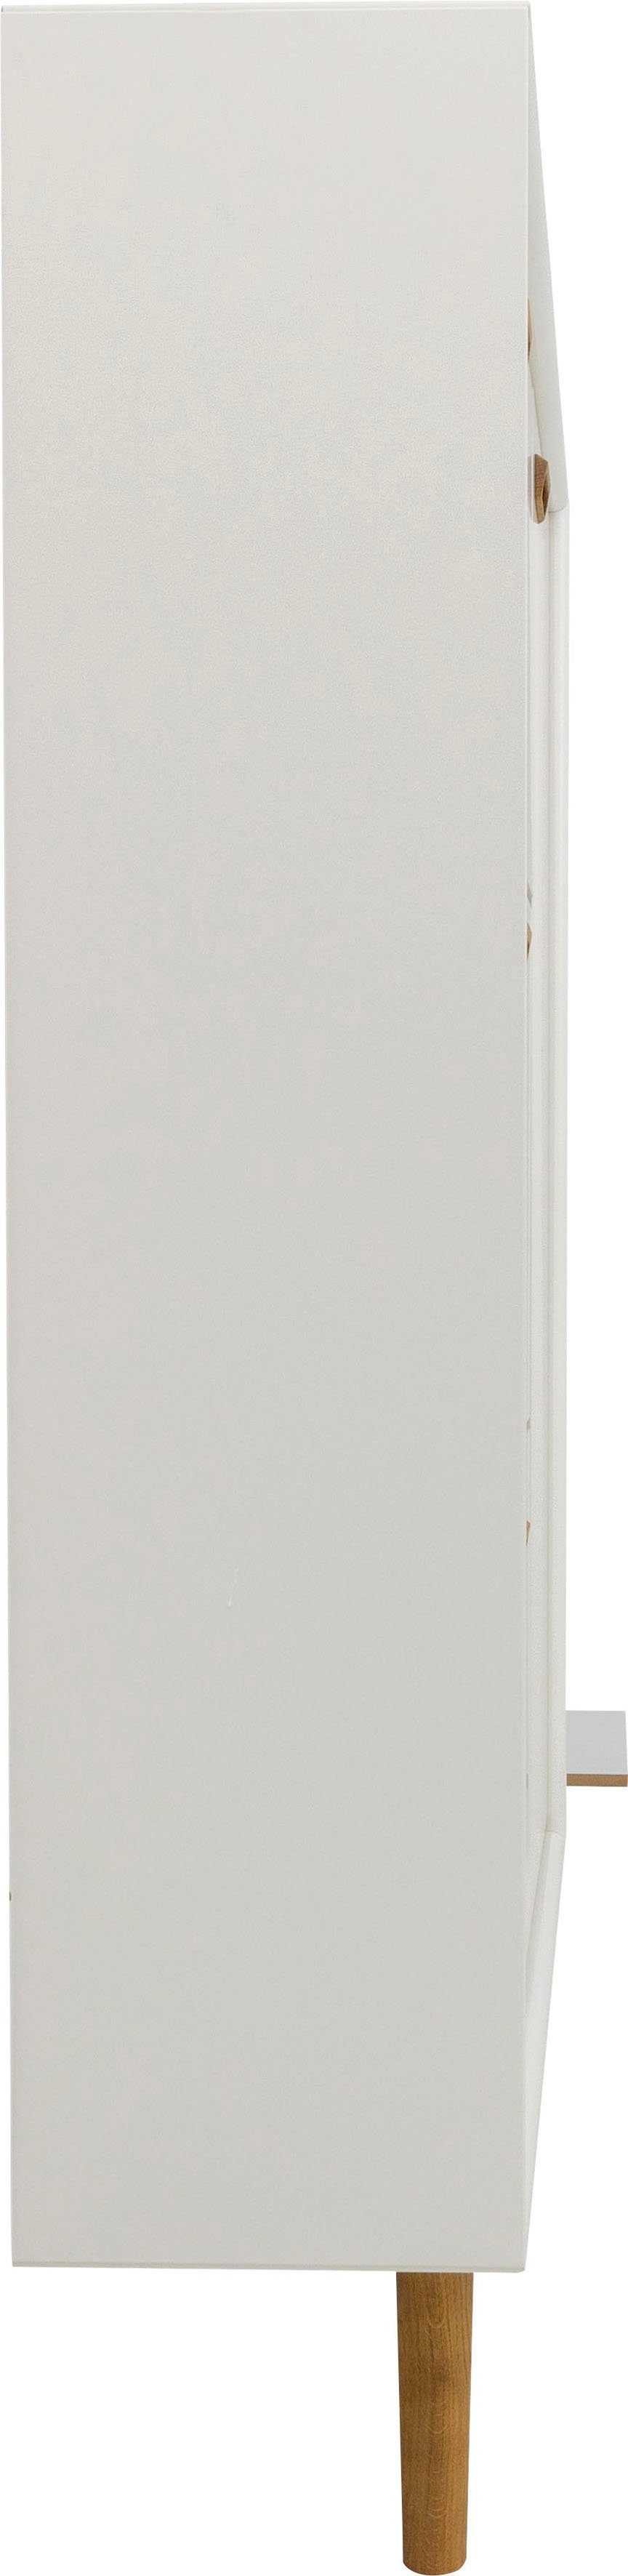 Tenzo Schuhschrank SVEA von Design Design Klappen, Tenzo Tür 3 studio white und 1 mit